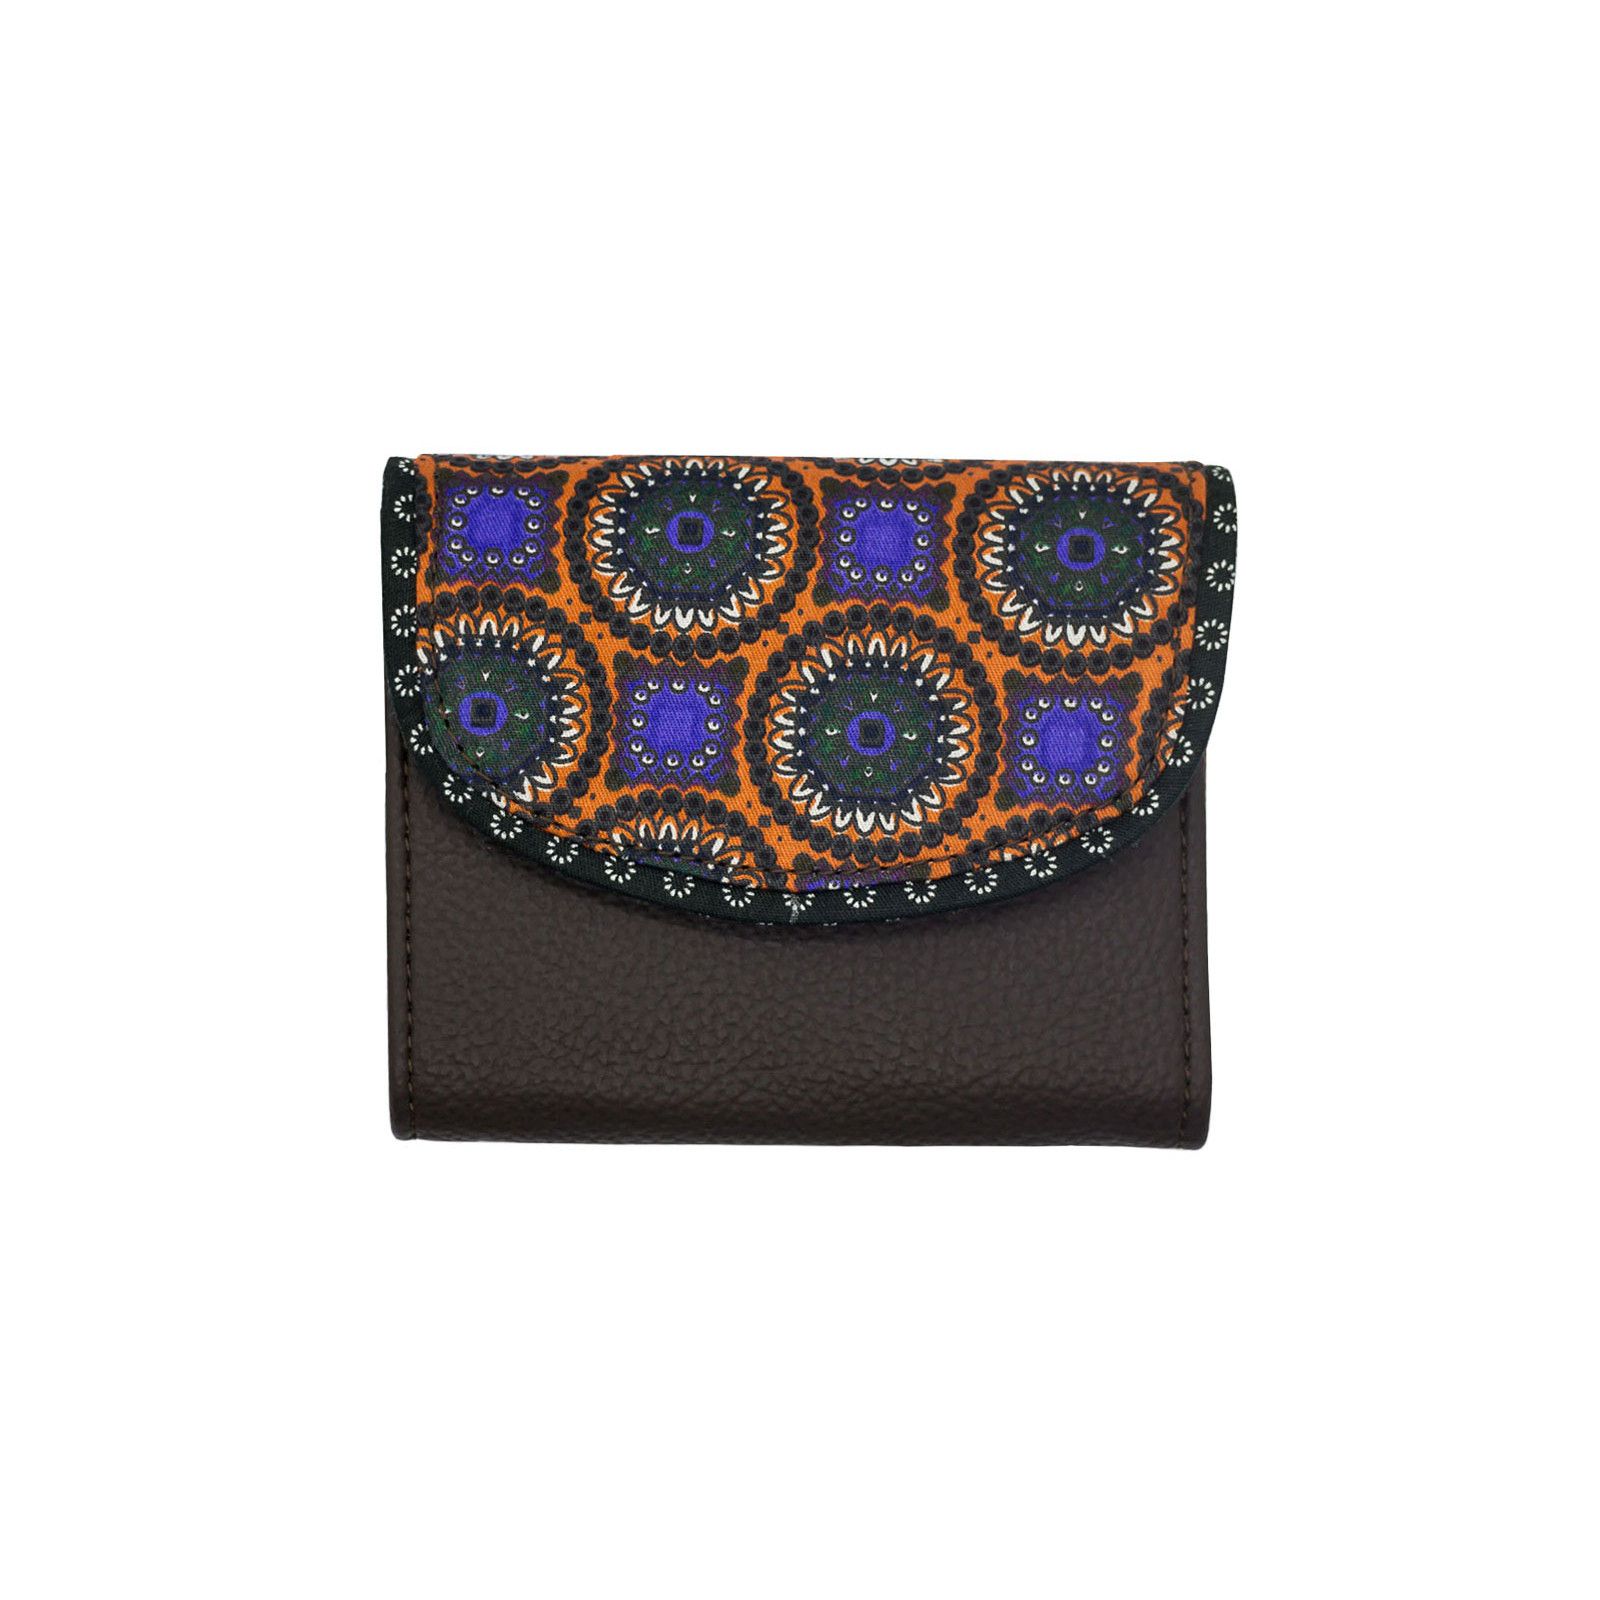 Portefeuille petit format original marron brun foncé et motifs orange violet